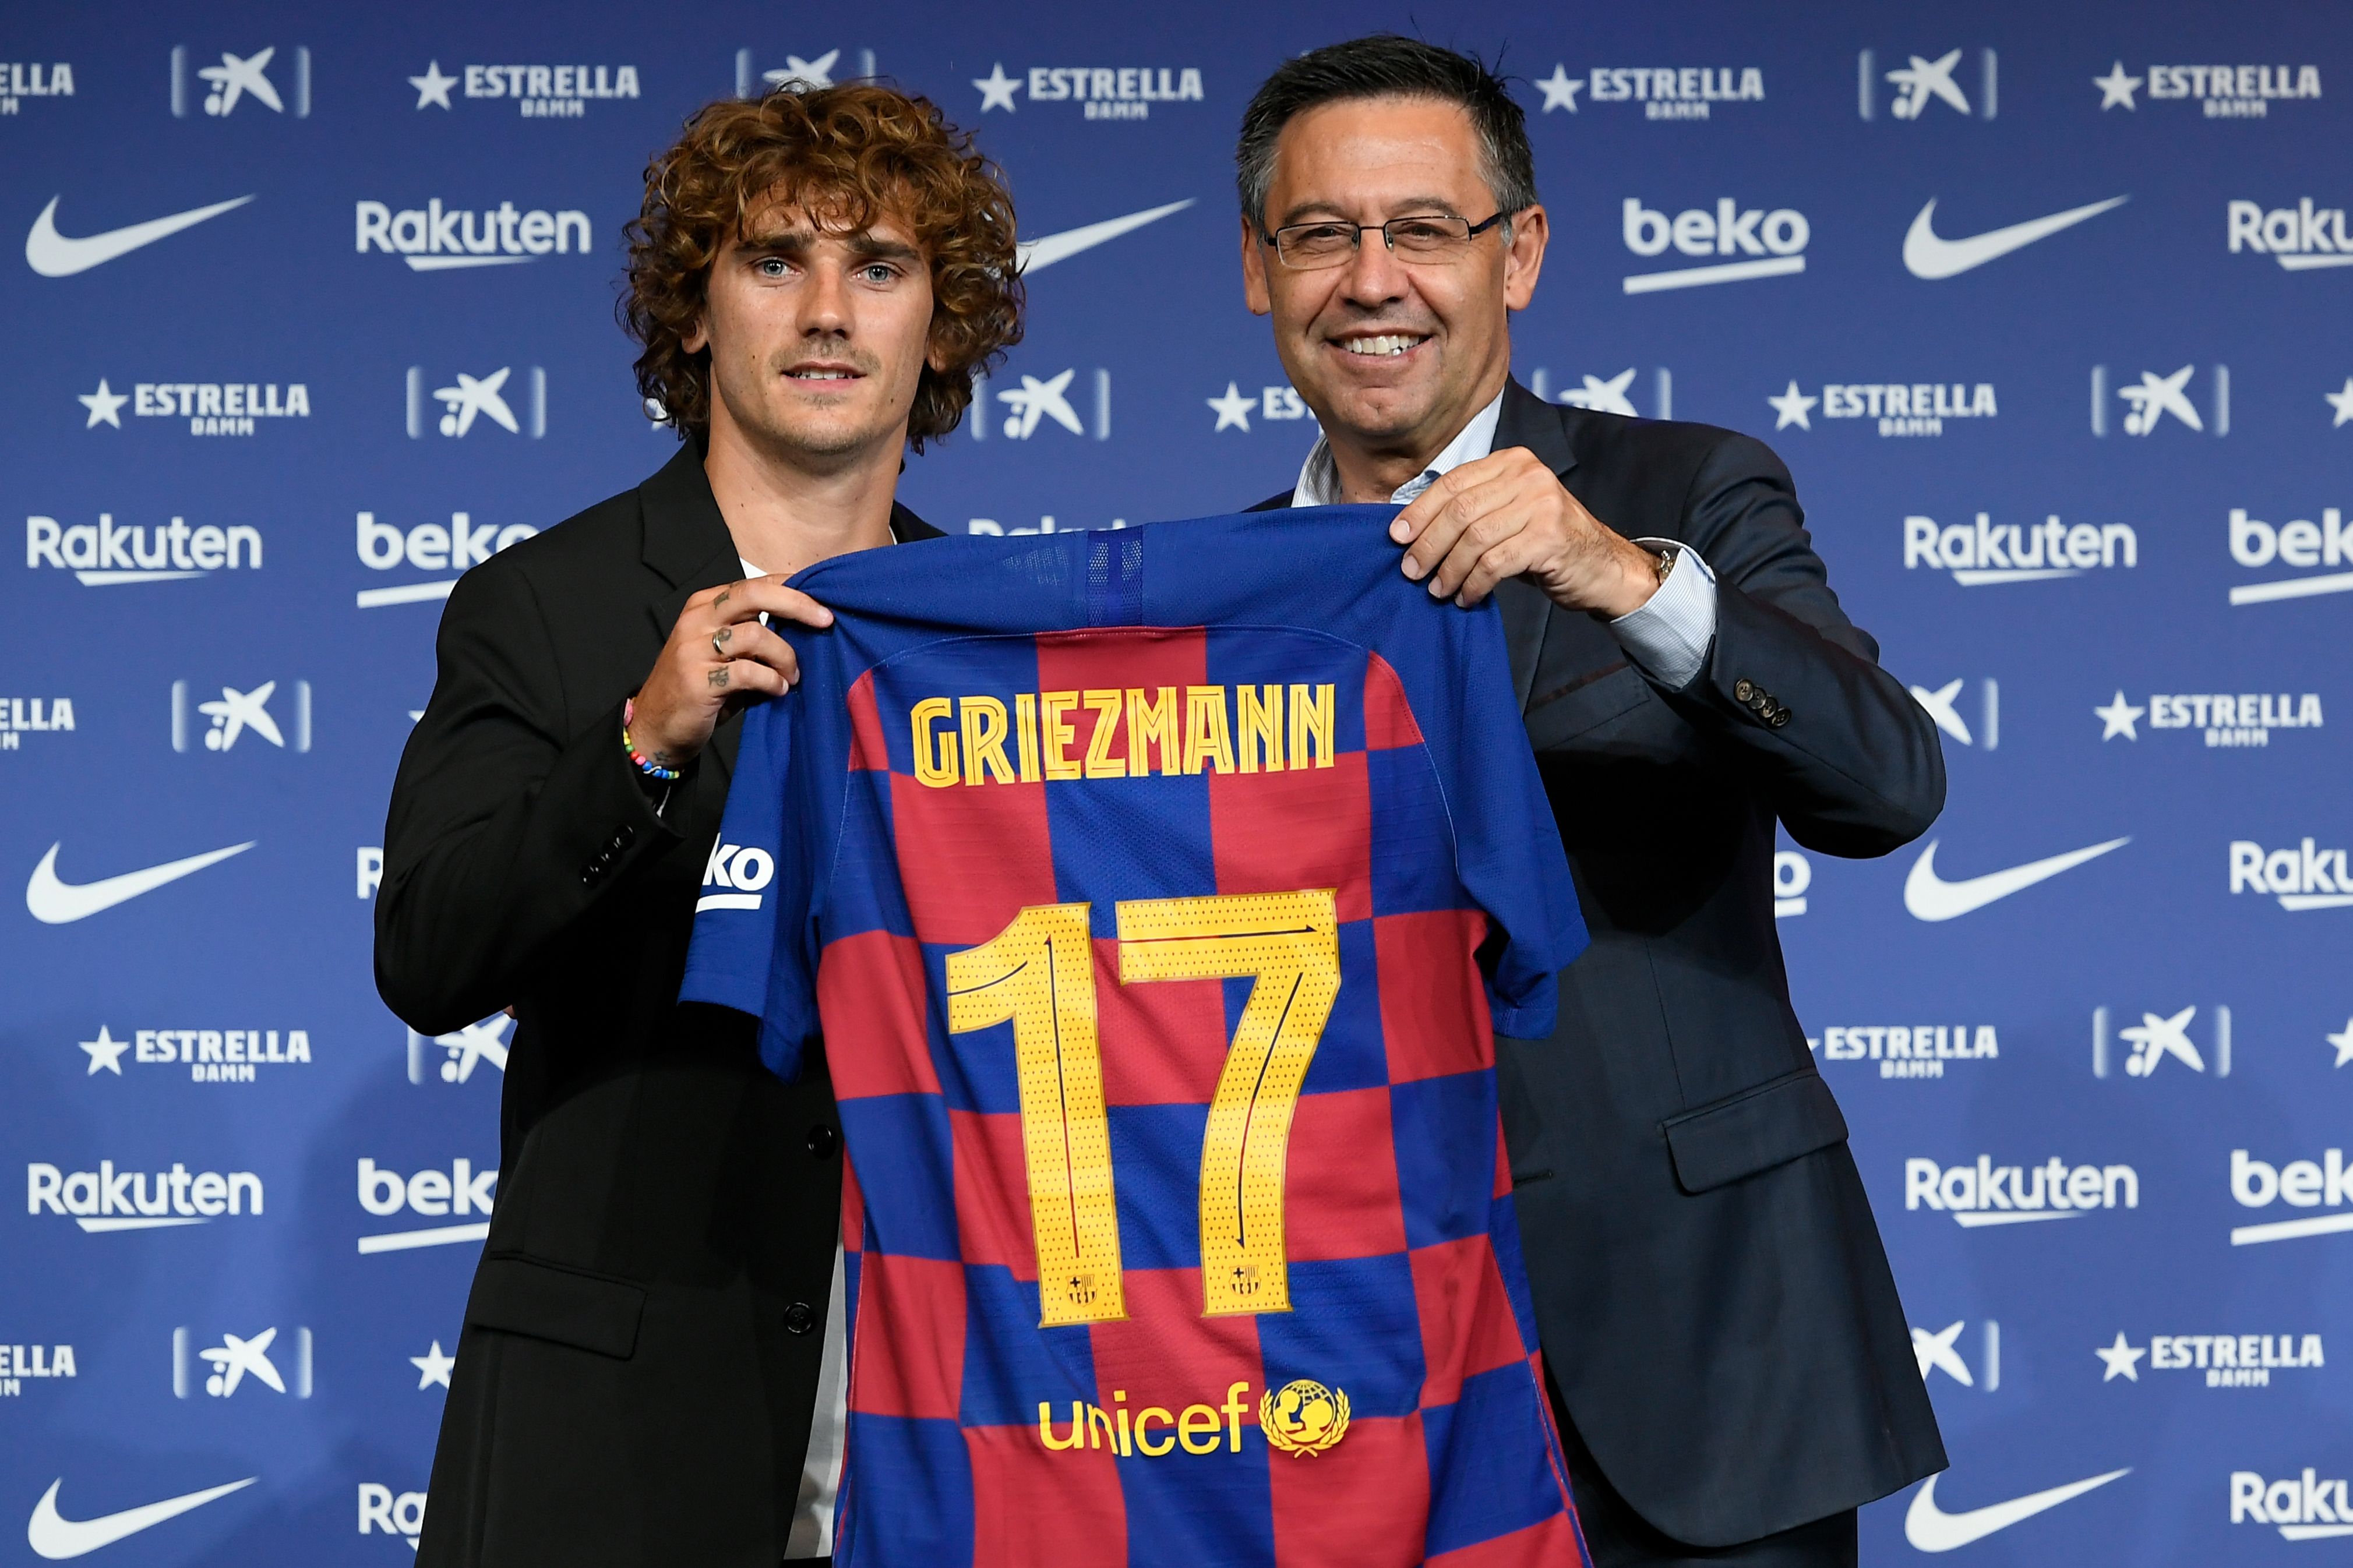 El delantero francés Antoine Griezmann 
fue presentado por el expresidente del Barsa, Josep Maria Bartomeu, en el  Camp Nou el 14 de julio de 2019. Foto Prensa Libre: AFP.